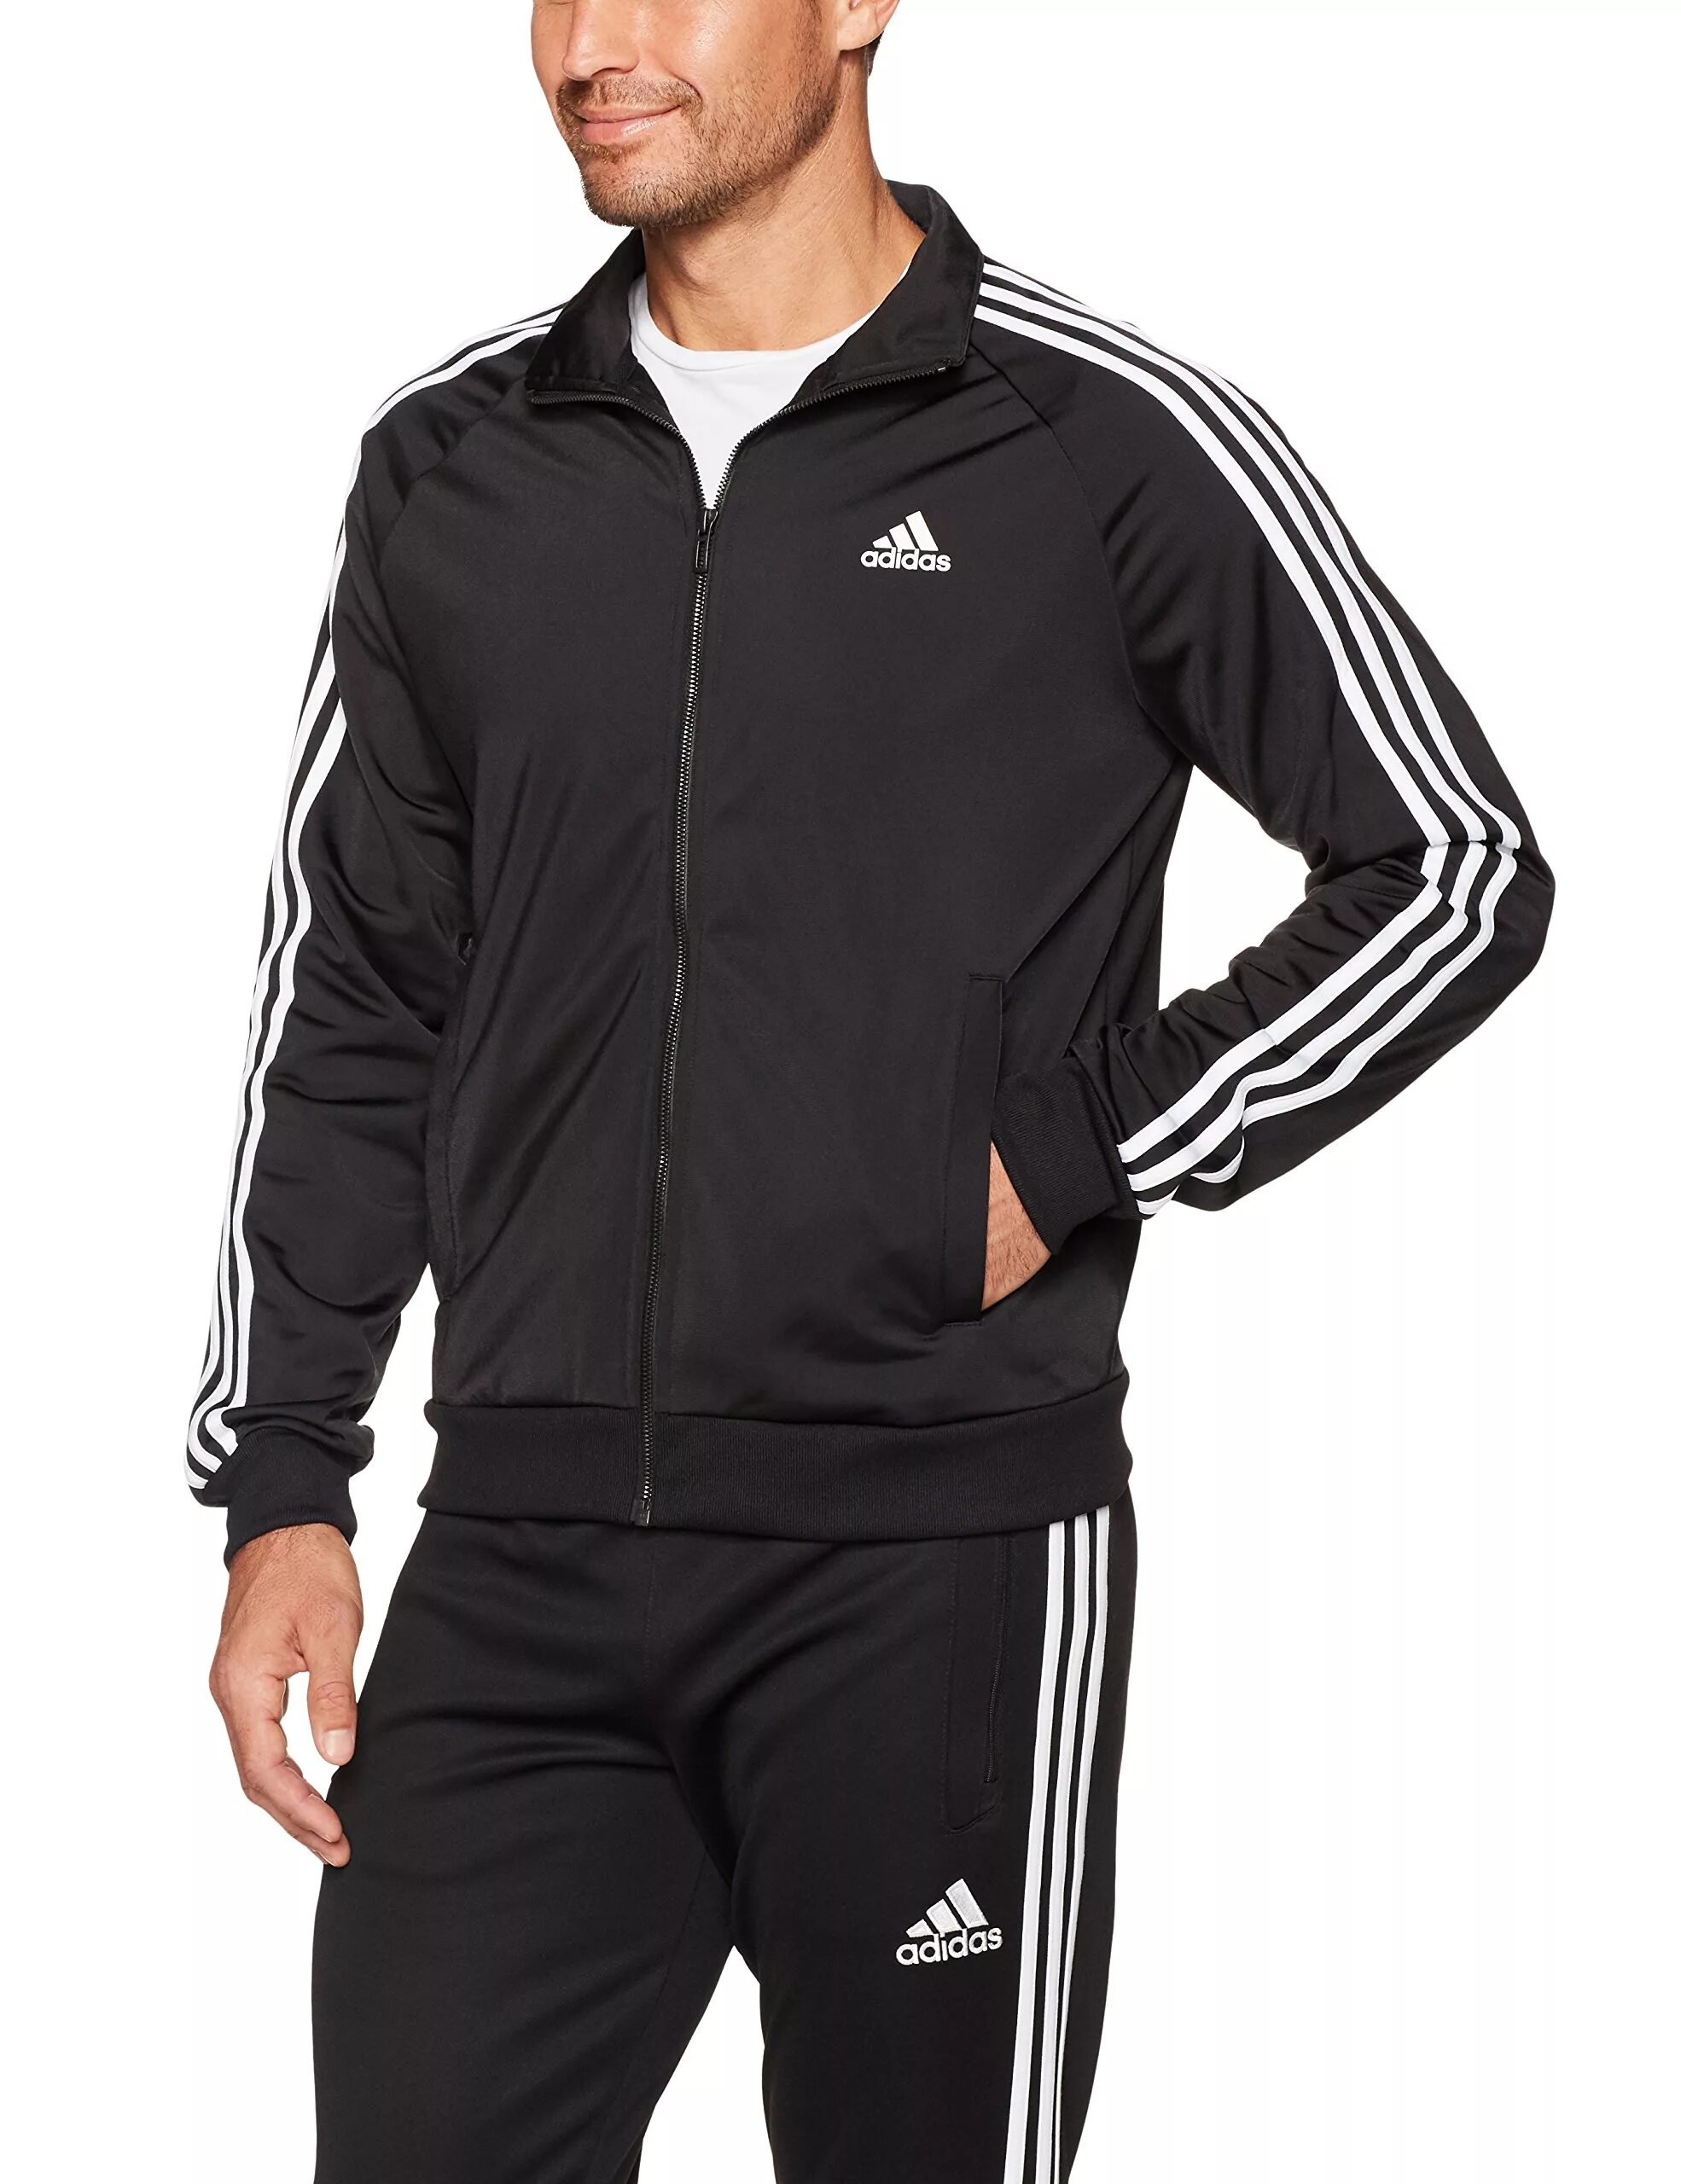 Спортивный костюм адидас мужской Essentials 3. Adidas 3 Stripes костюм мужской 2020. Track Jacket адидас. Adidas Essentials 3-Stripes костюм. Спортивный костюм адидас классик